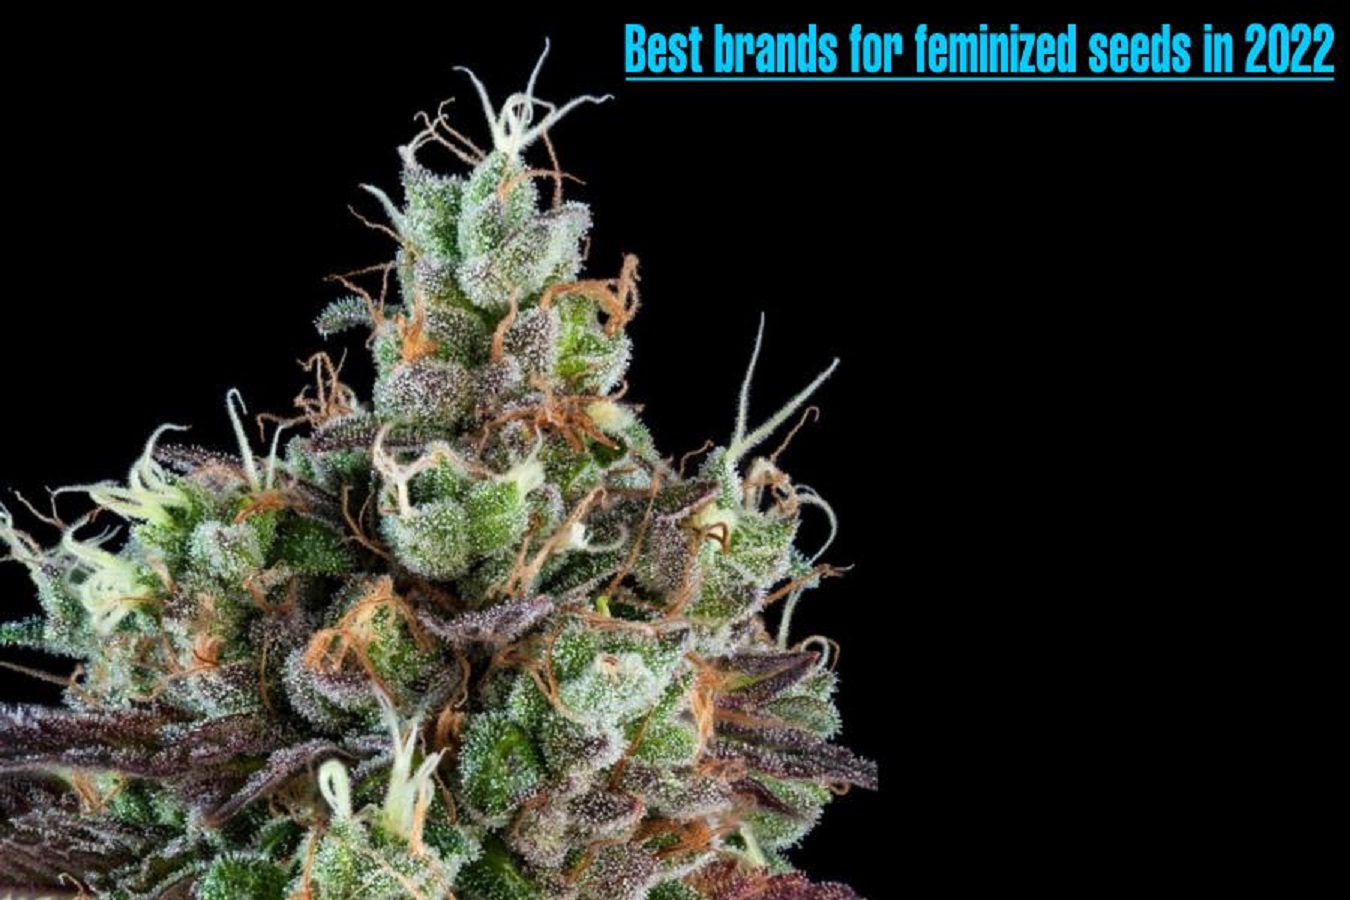 Best brands for feminized seeds in 2022